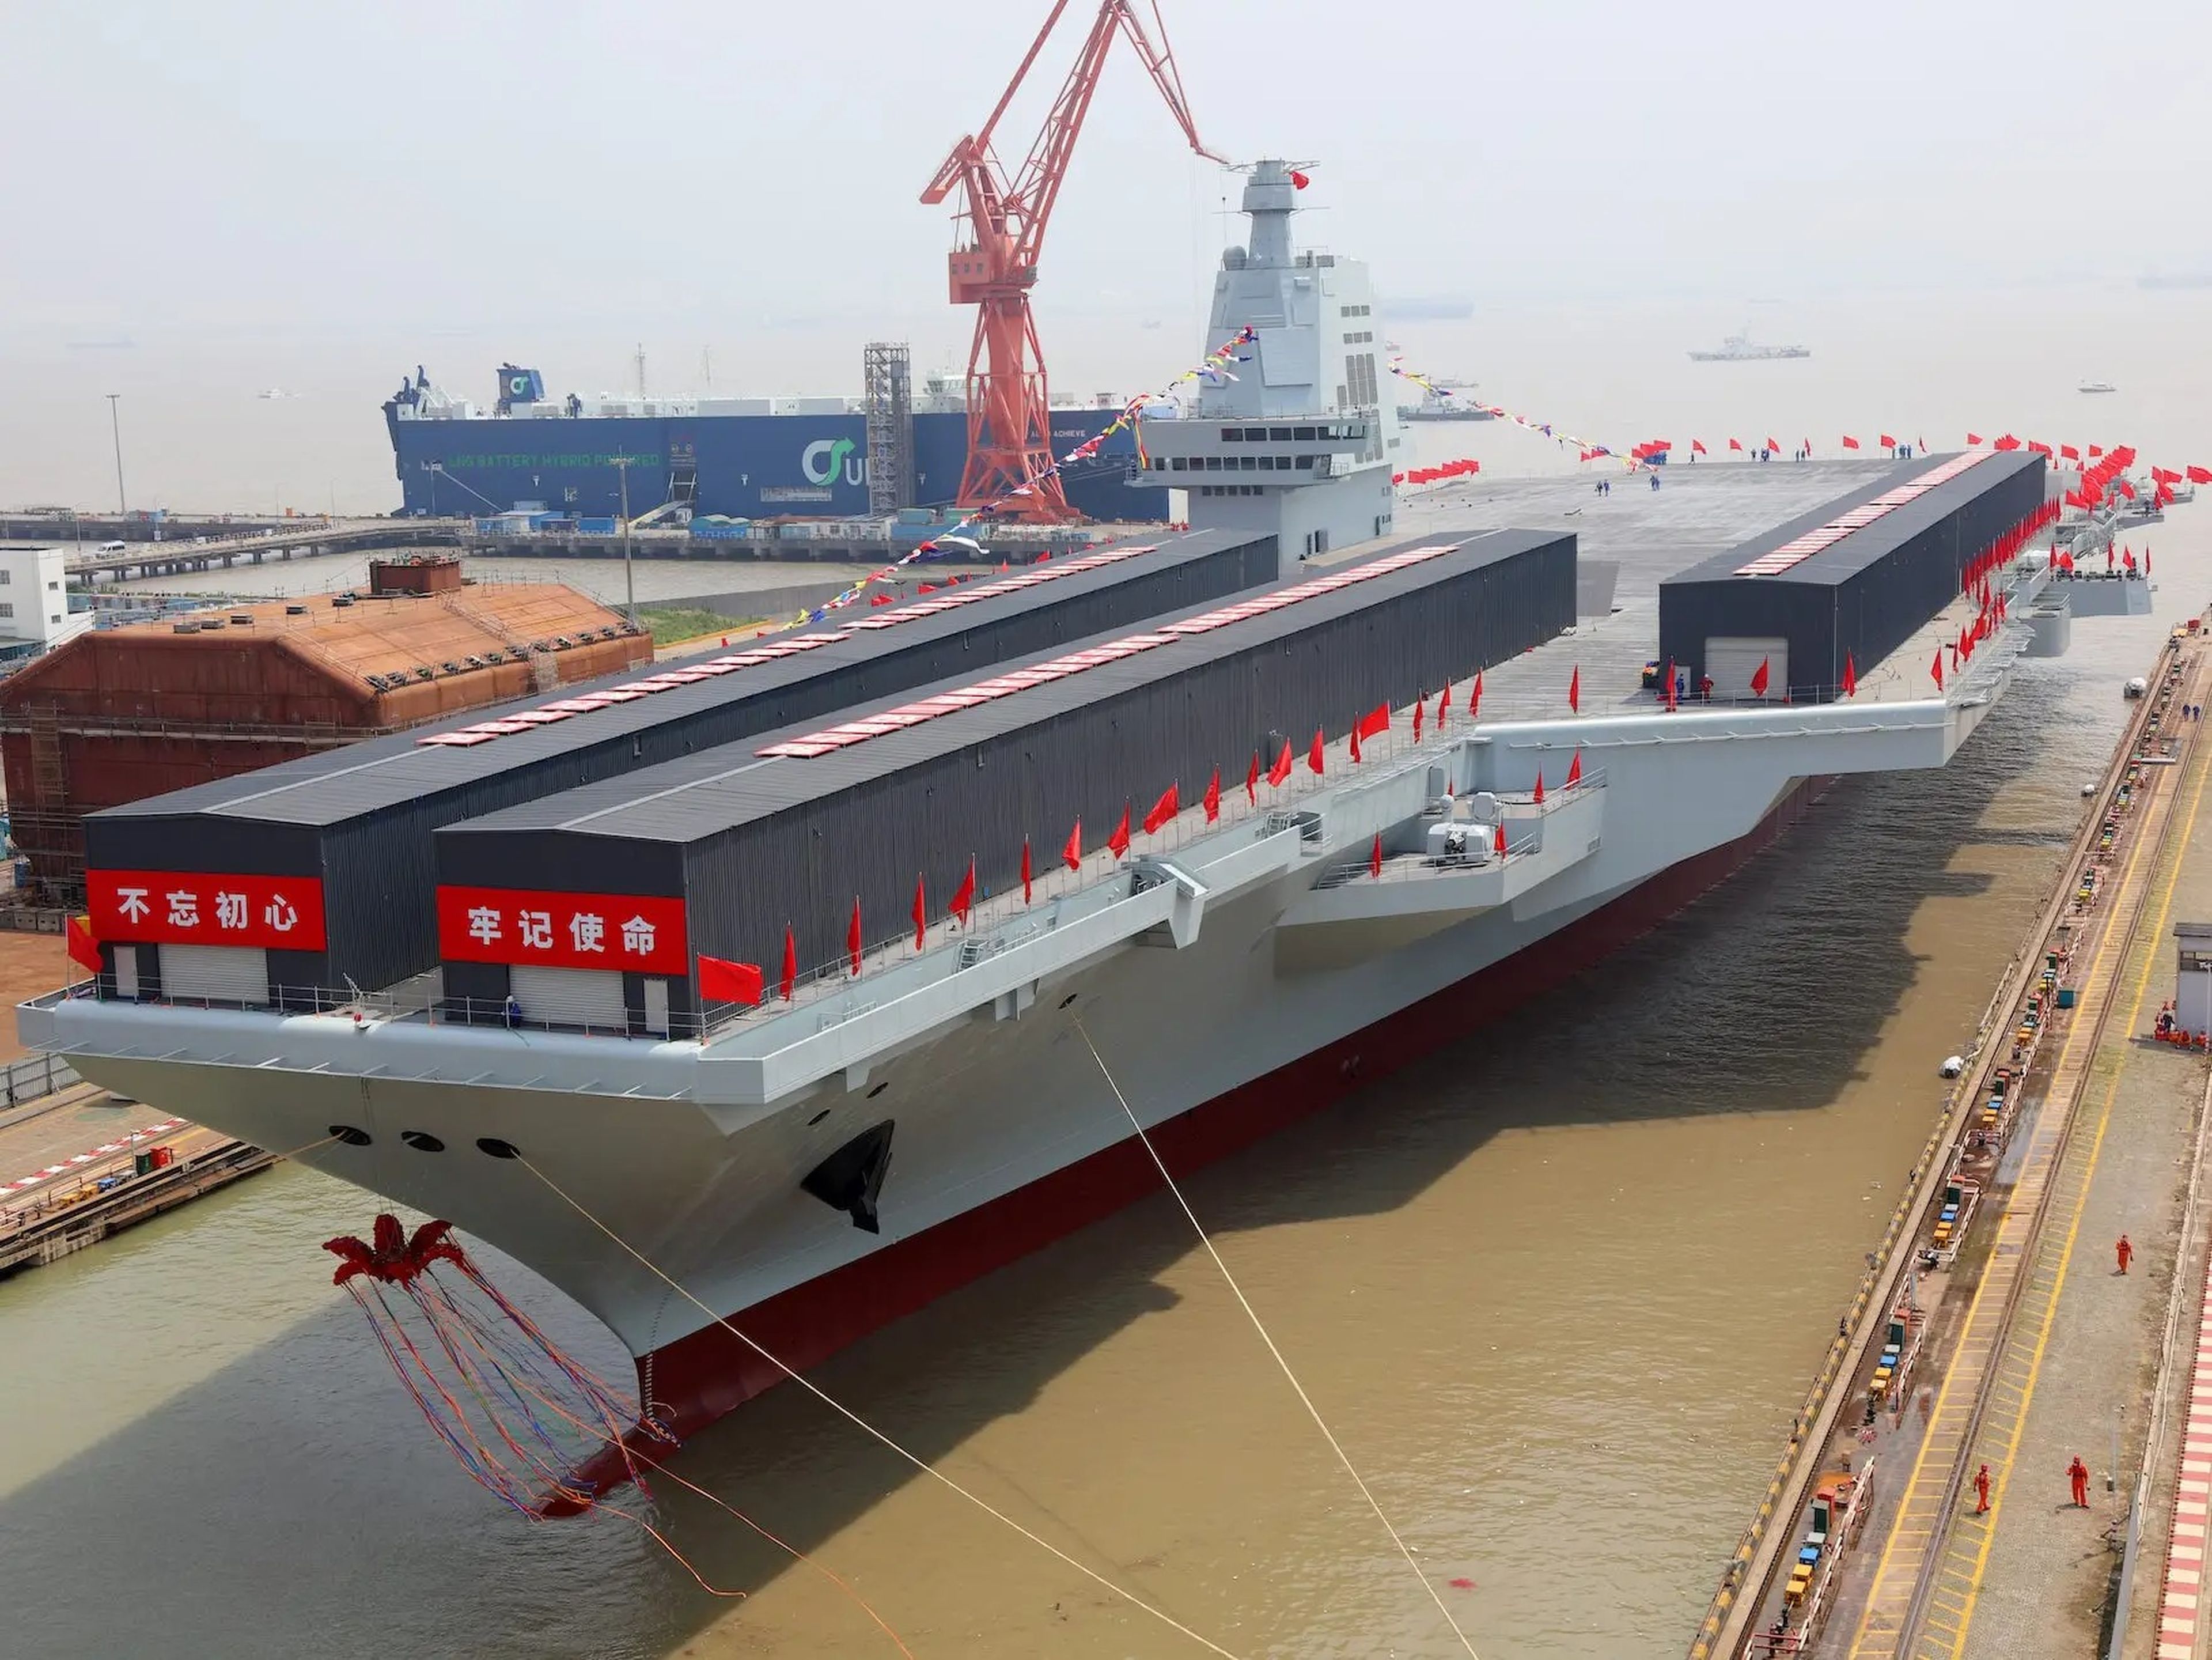 El tercer portaaviones de China, el Fujian, en su ceremonia de botadura en Shangai el 17 de junio de 2022.